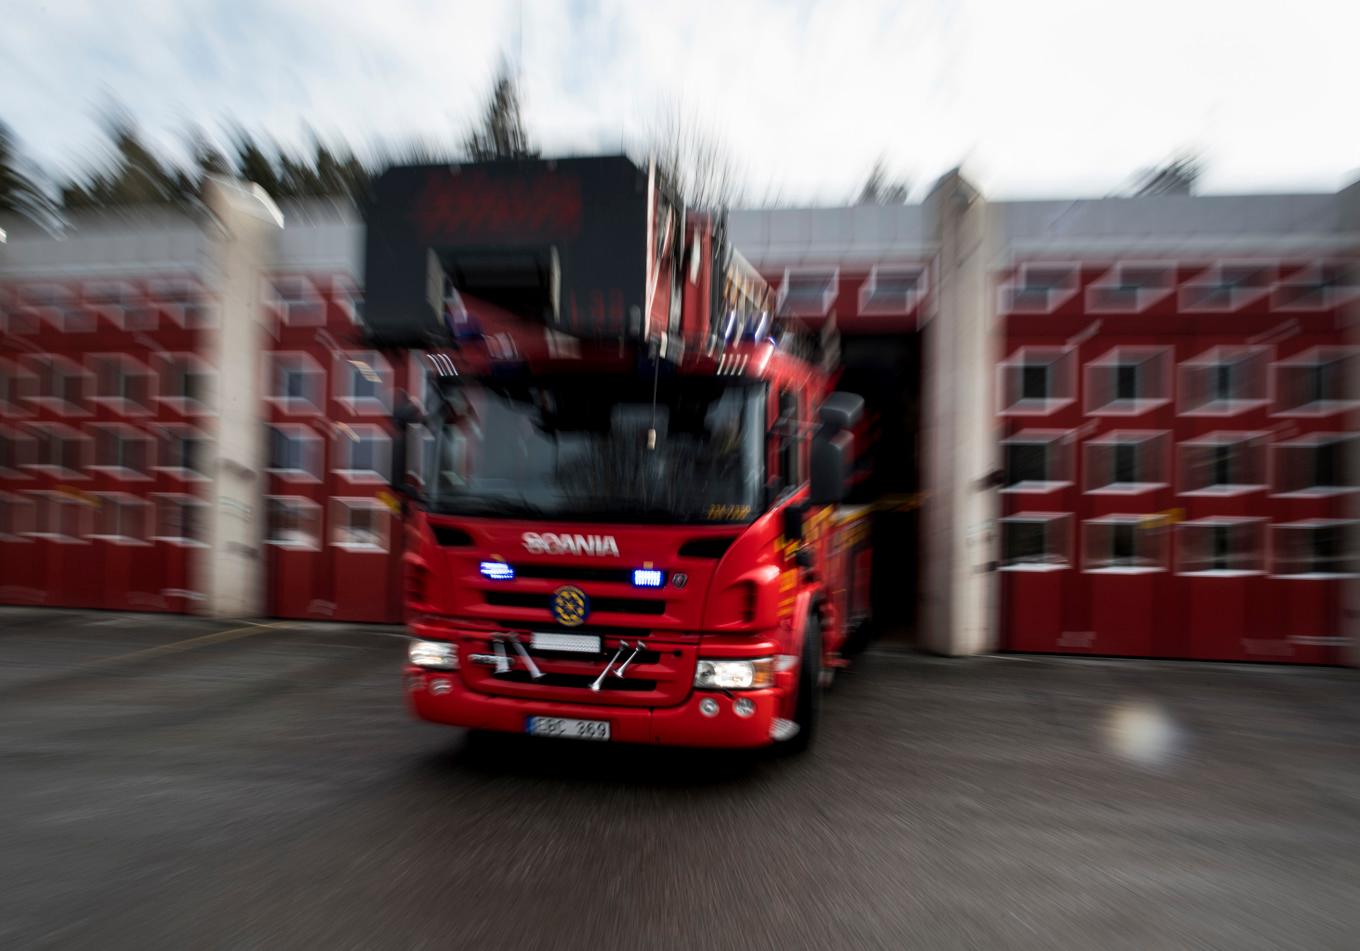 En man har gripits som misstänkt för mordbrand sedan en brand utbrutit på ett hotell i södra Stockholm. Arkivbild. Foto: Pontus Lundahl/TT